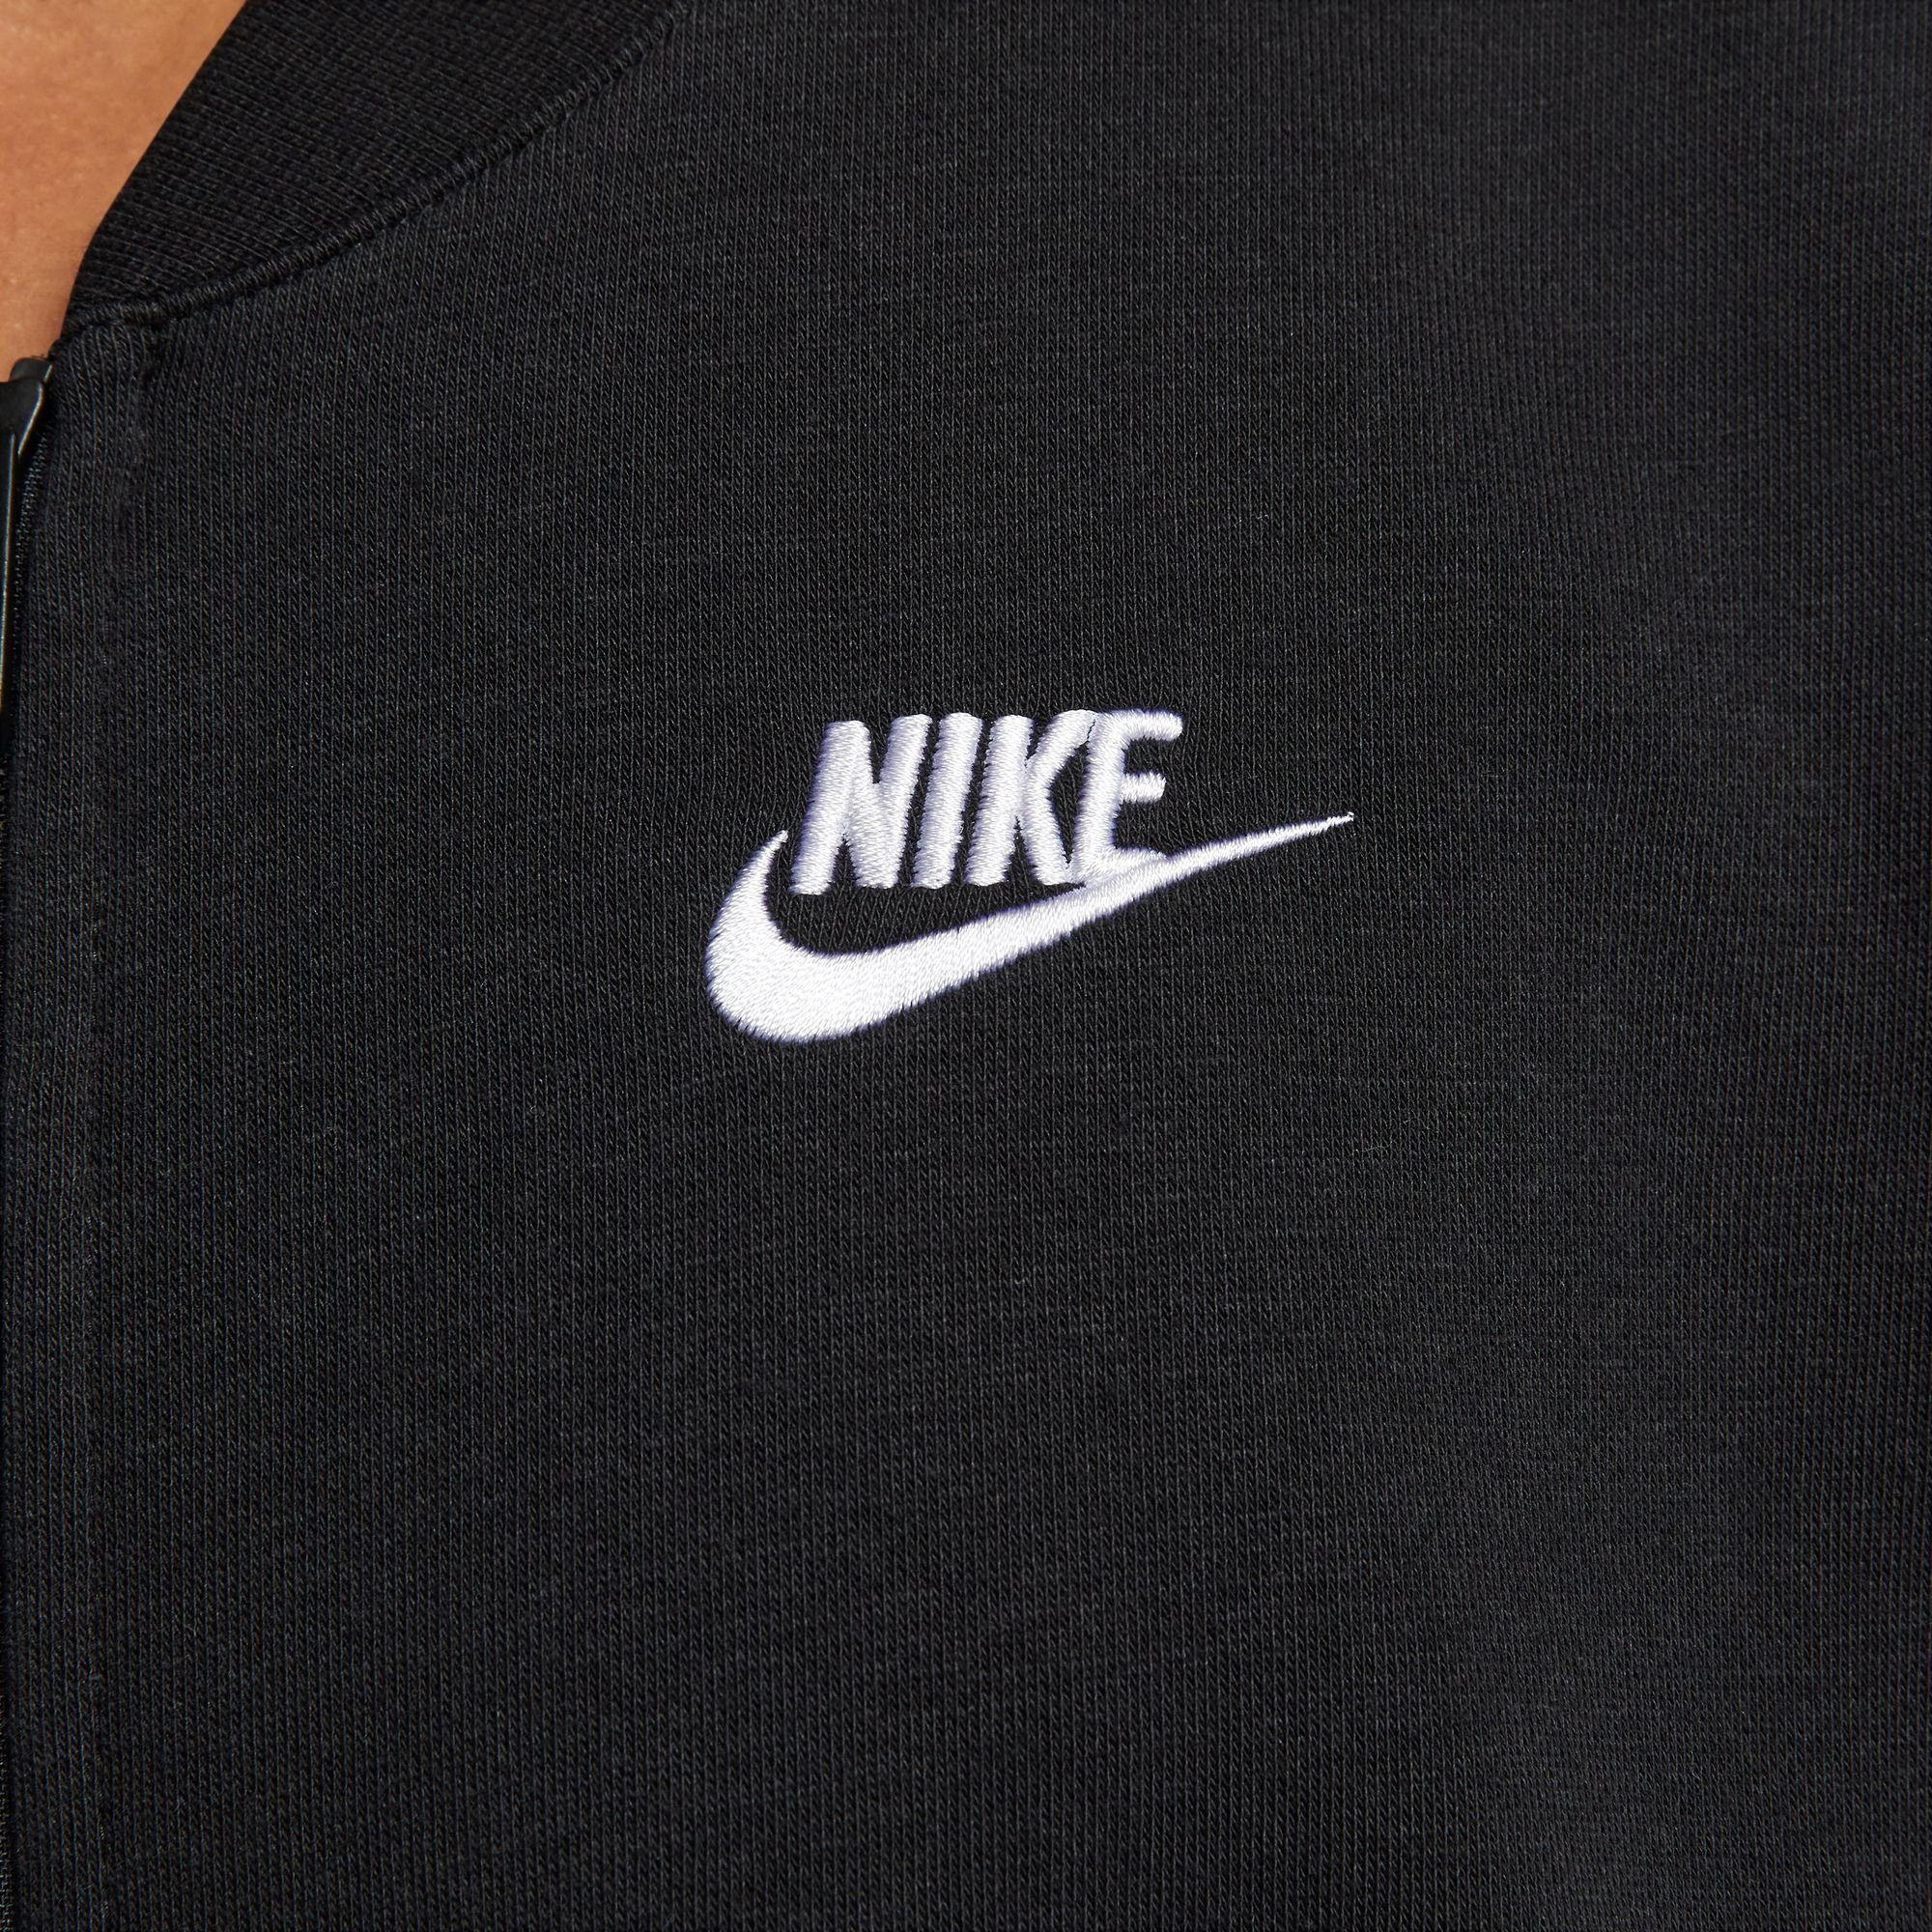 Sweatjacke CLUB CROPPED FLEECE OVERSIZED BLACK/WHITE Nike FULL-ZIP Sportswear JACKET WOMEN'S